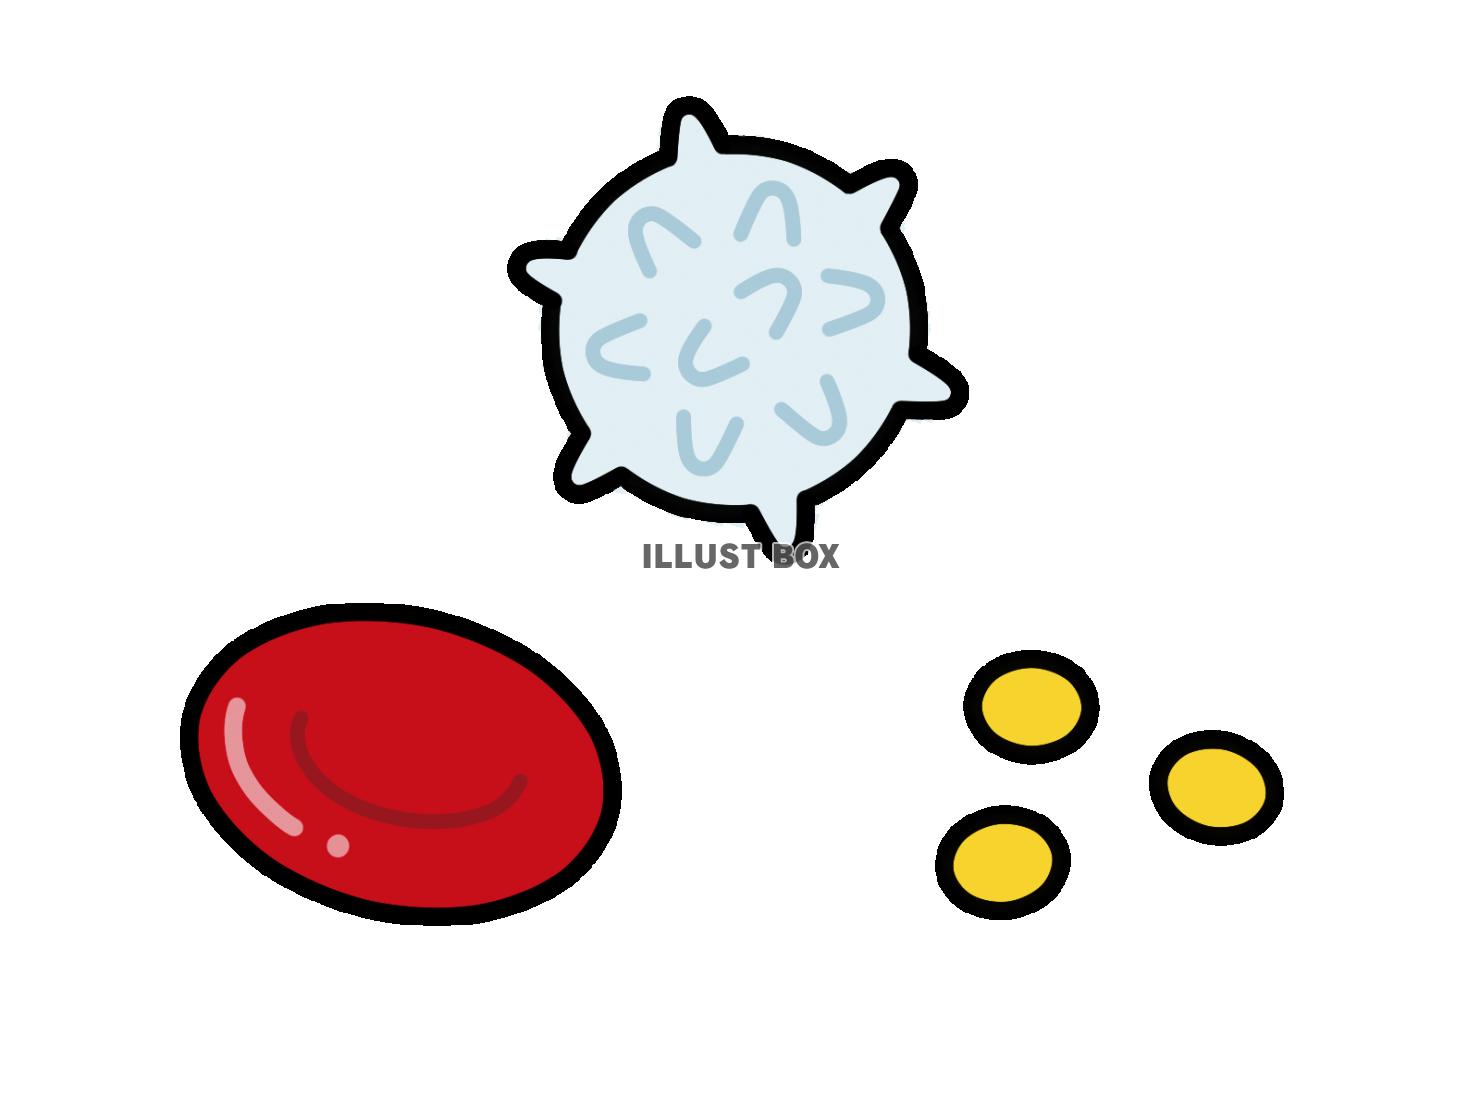 赤血球と白血球と血小板